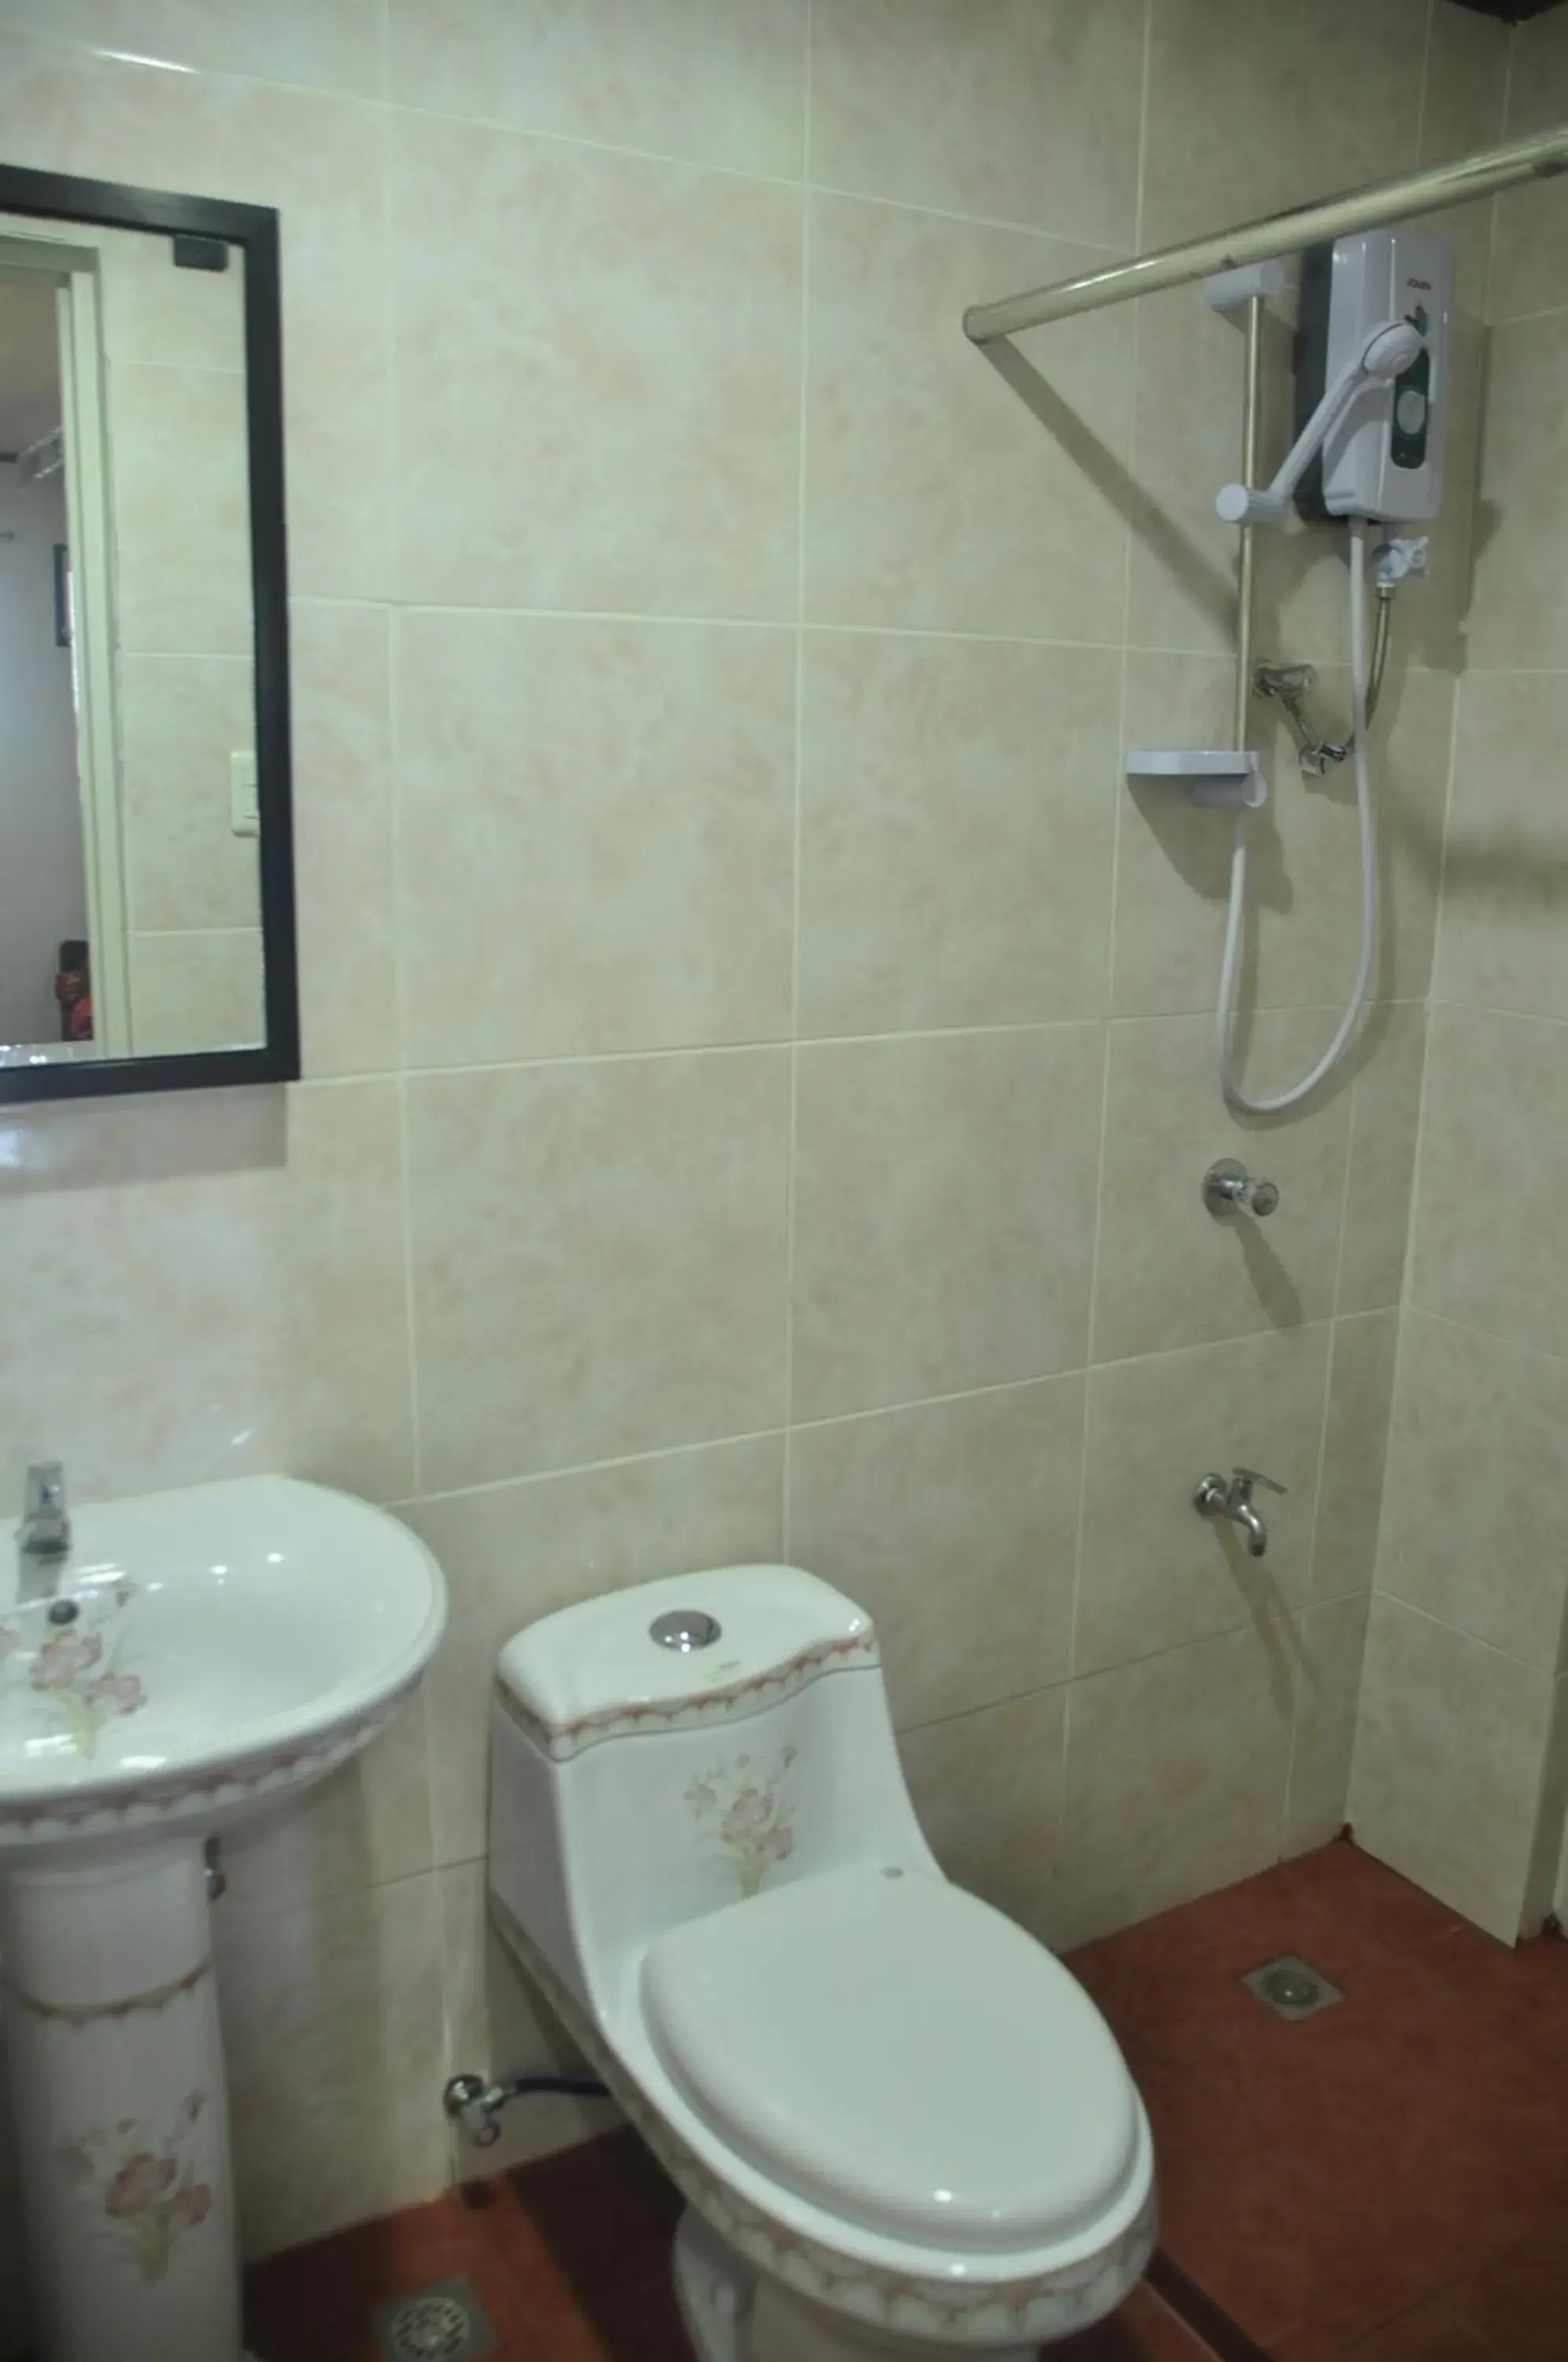 Toilet, Bathroom in Badladz Staycation Condos